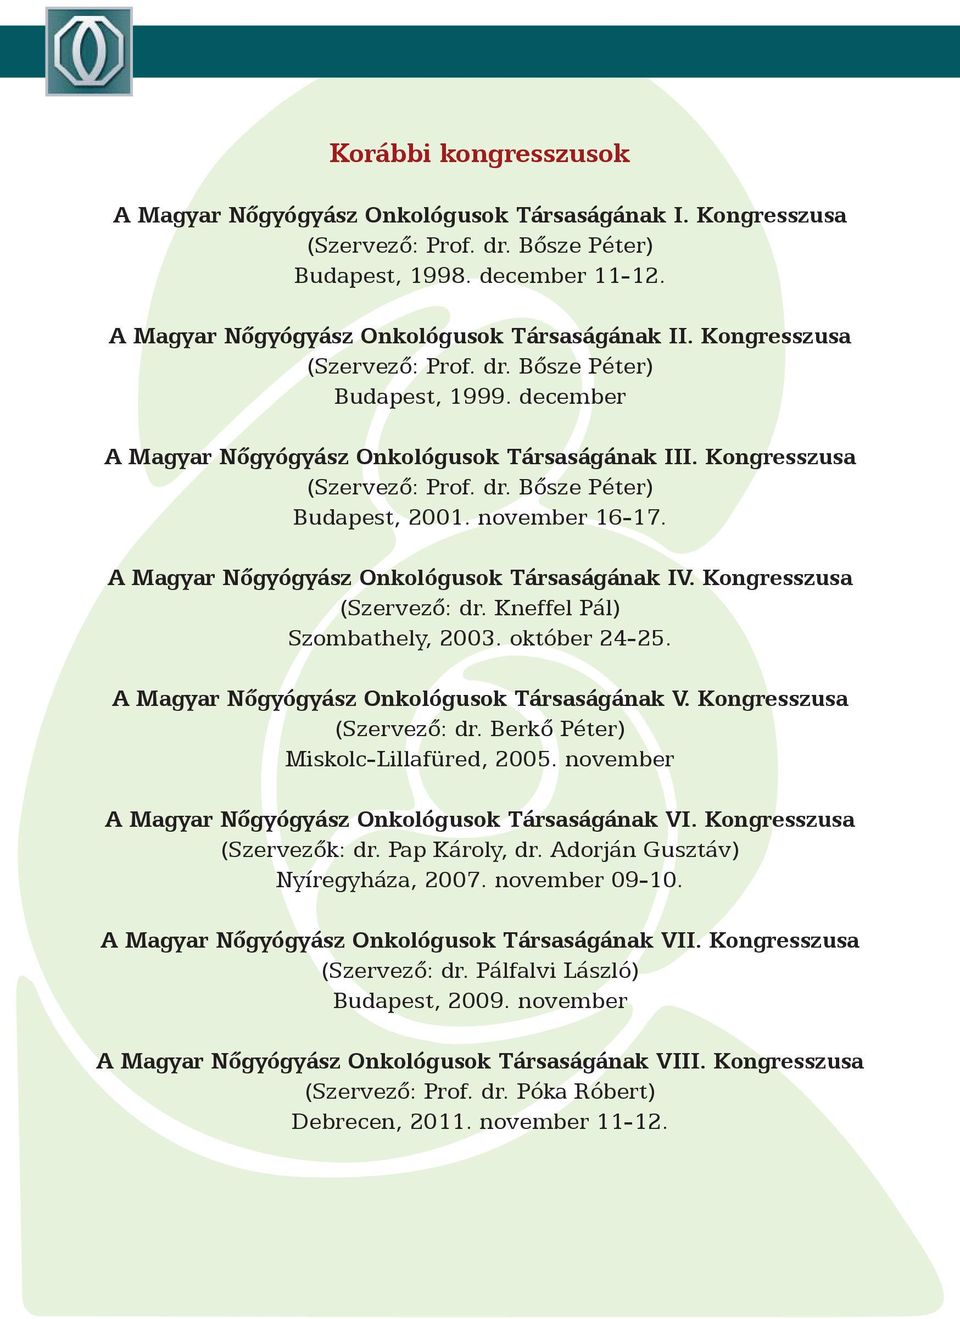 Kneffel Pál) Szombathely, 2003. október 24-25. A Magyar Nőgyógyász Onkológusok Társaságának V. Kongresszusa (Szervező: dr. Berkő Péter) Miskolc-Lillafüred, 2005.